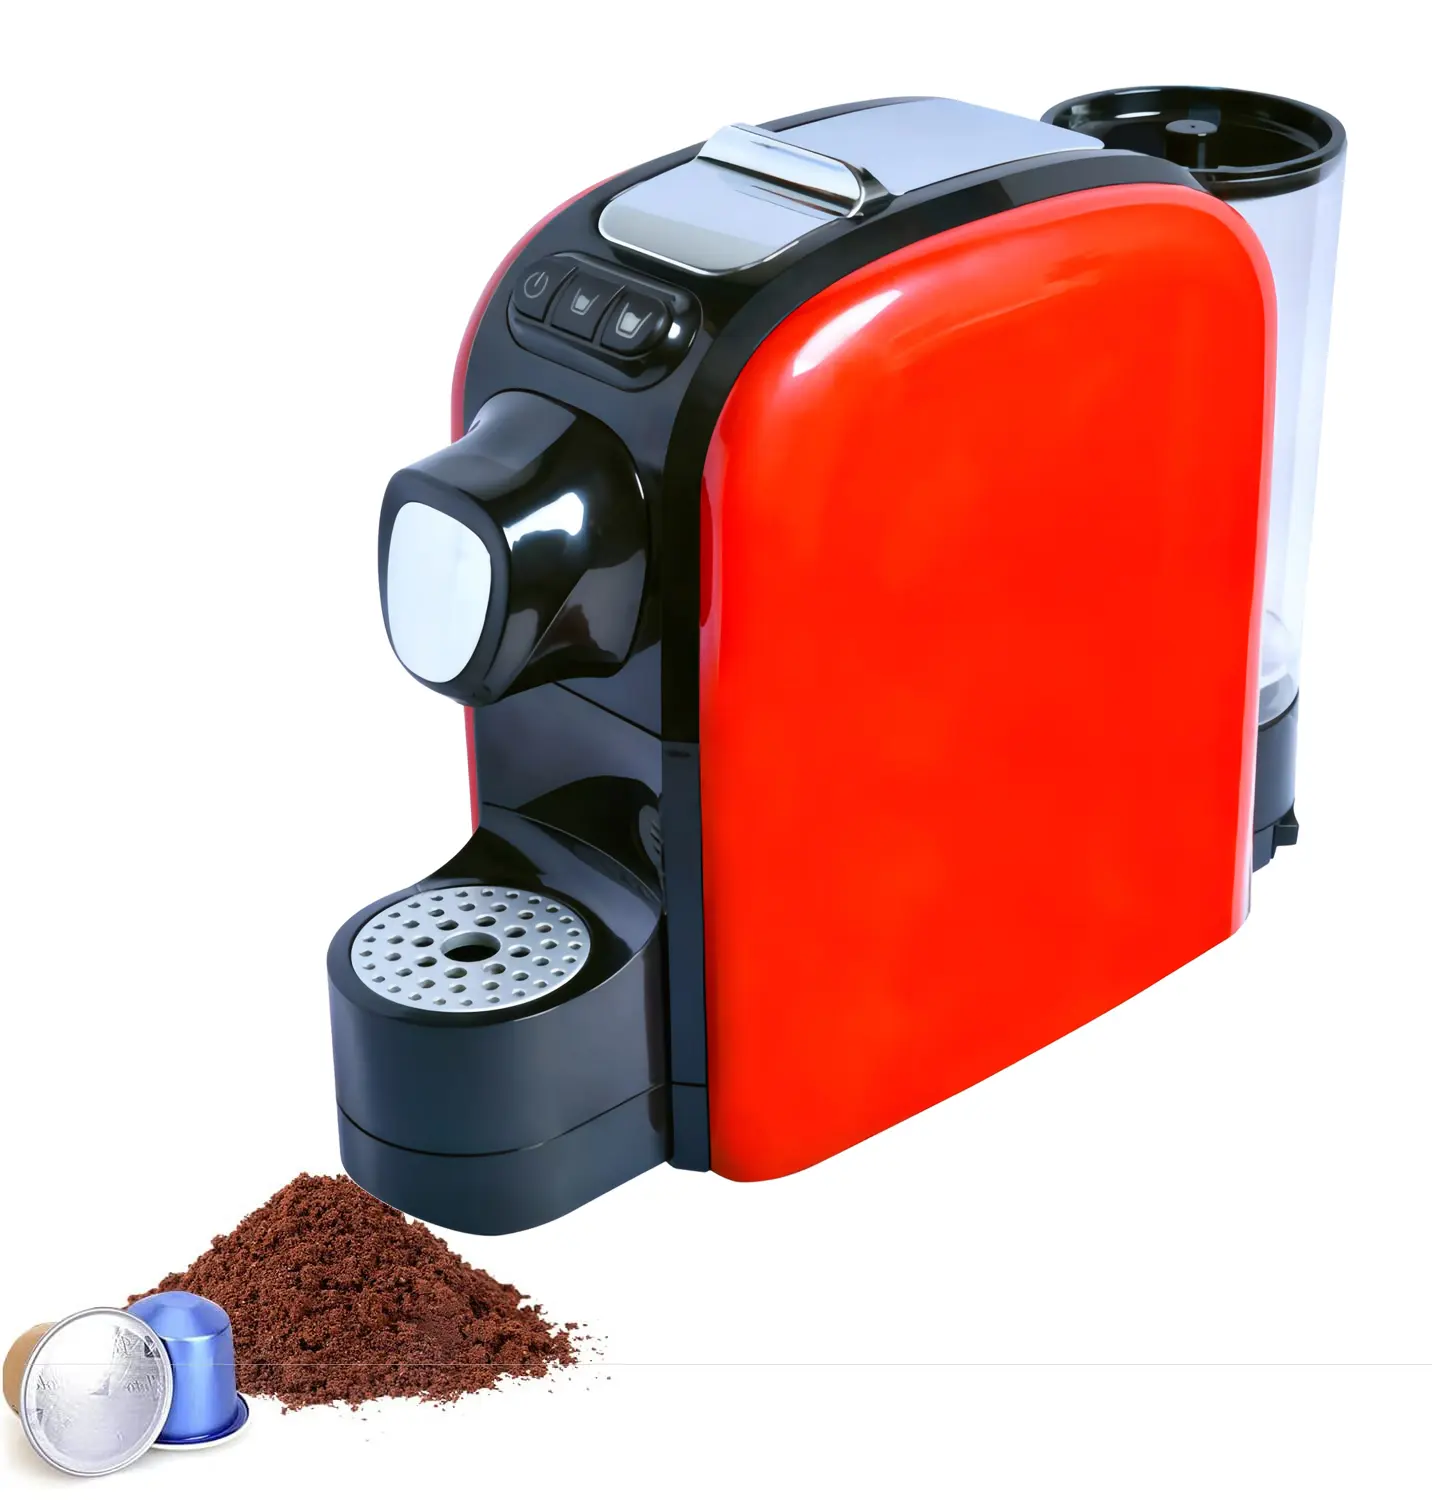 Sıcak bira kapasiteli yemek Sense teknoloji ve Ember pişirme fonksiyonu lezzetli fincan kapsül kahve makinesi